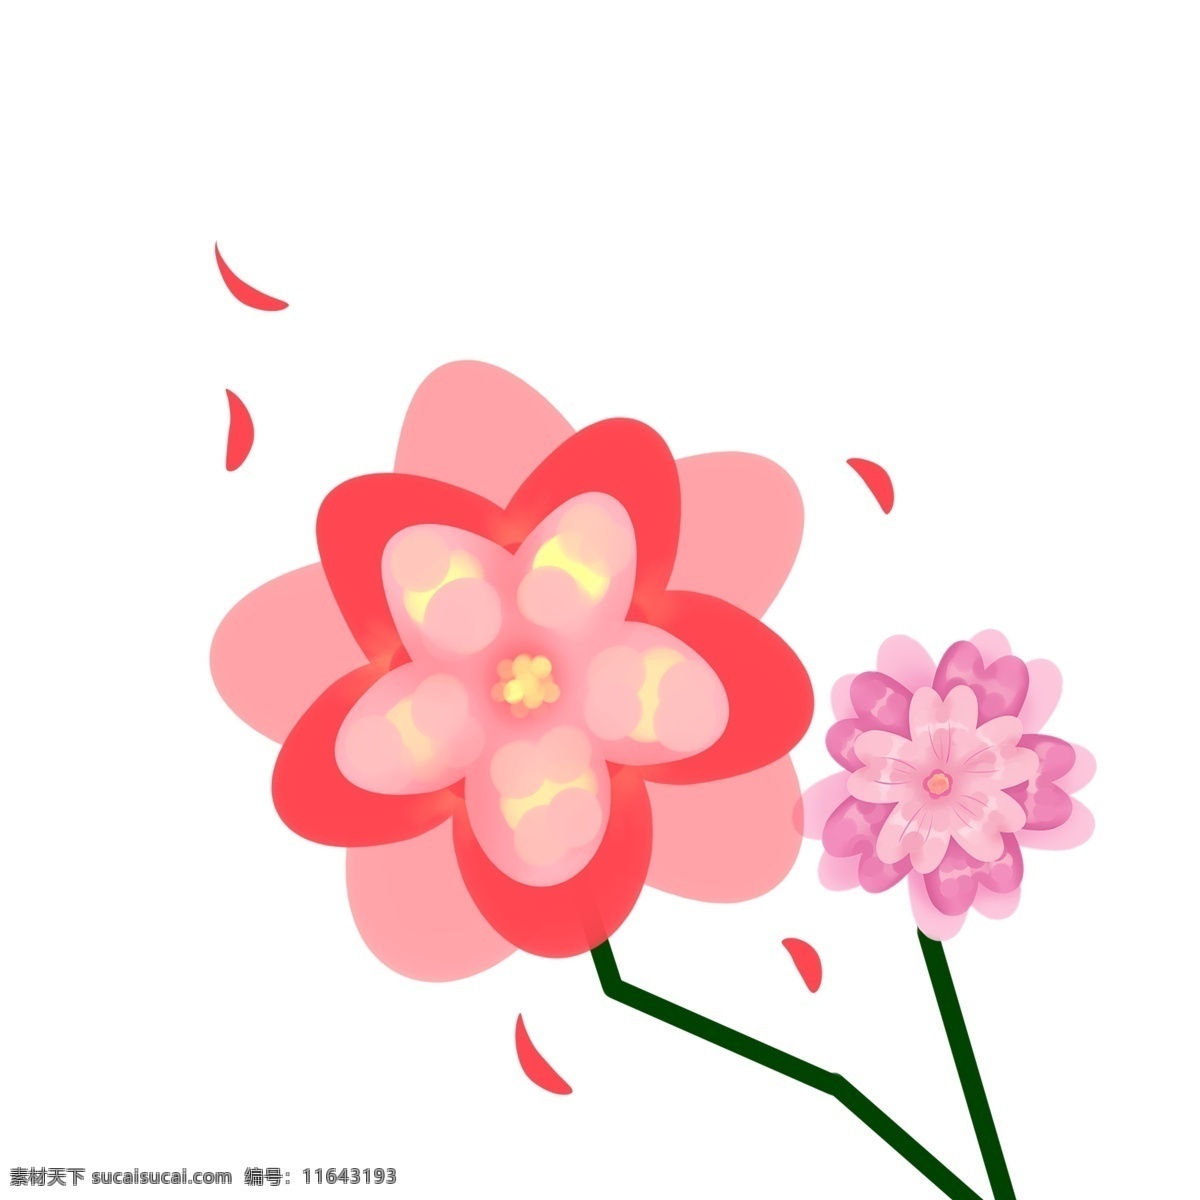 漂亮 粉色 樱花 插画 红色樱花 日本樱花 花朵 唯美樱花 花儿 樱花插图 漂亮的樱花 插图